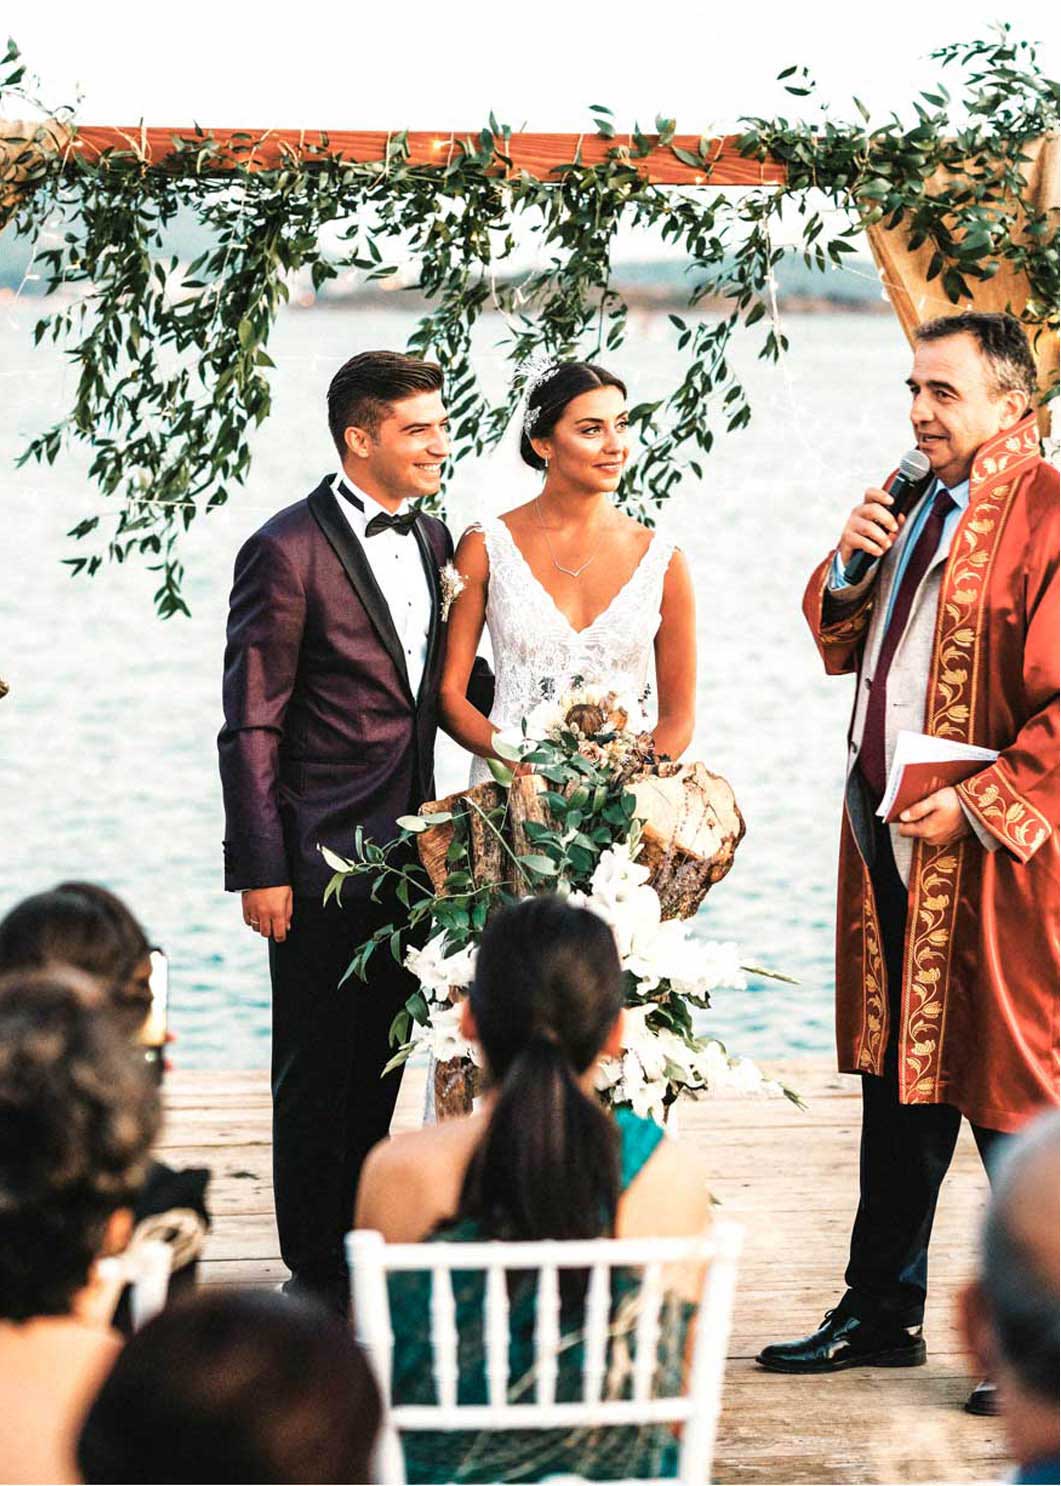 İzmir düğün hikayesi,en güzel düğün videoları,en güzel düğün hikayeleri,belgesel düğün videoları,düğün hikayesi fiyatları,düğün klibi,wedding story,düğün hikayesi nedir,eğlenceli düğün klibi,düğün hikayesi müzikleri,düğün kısa film